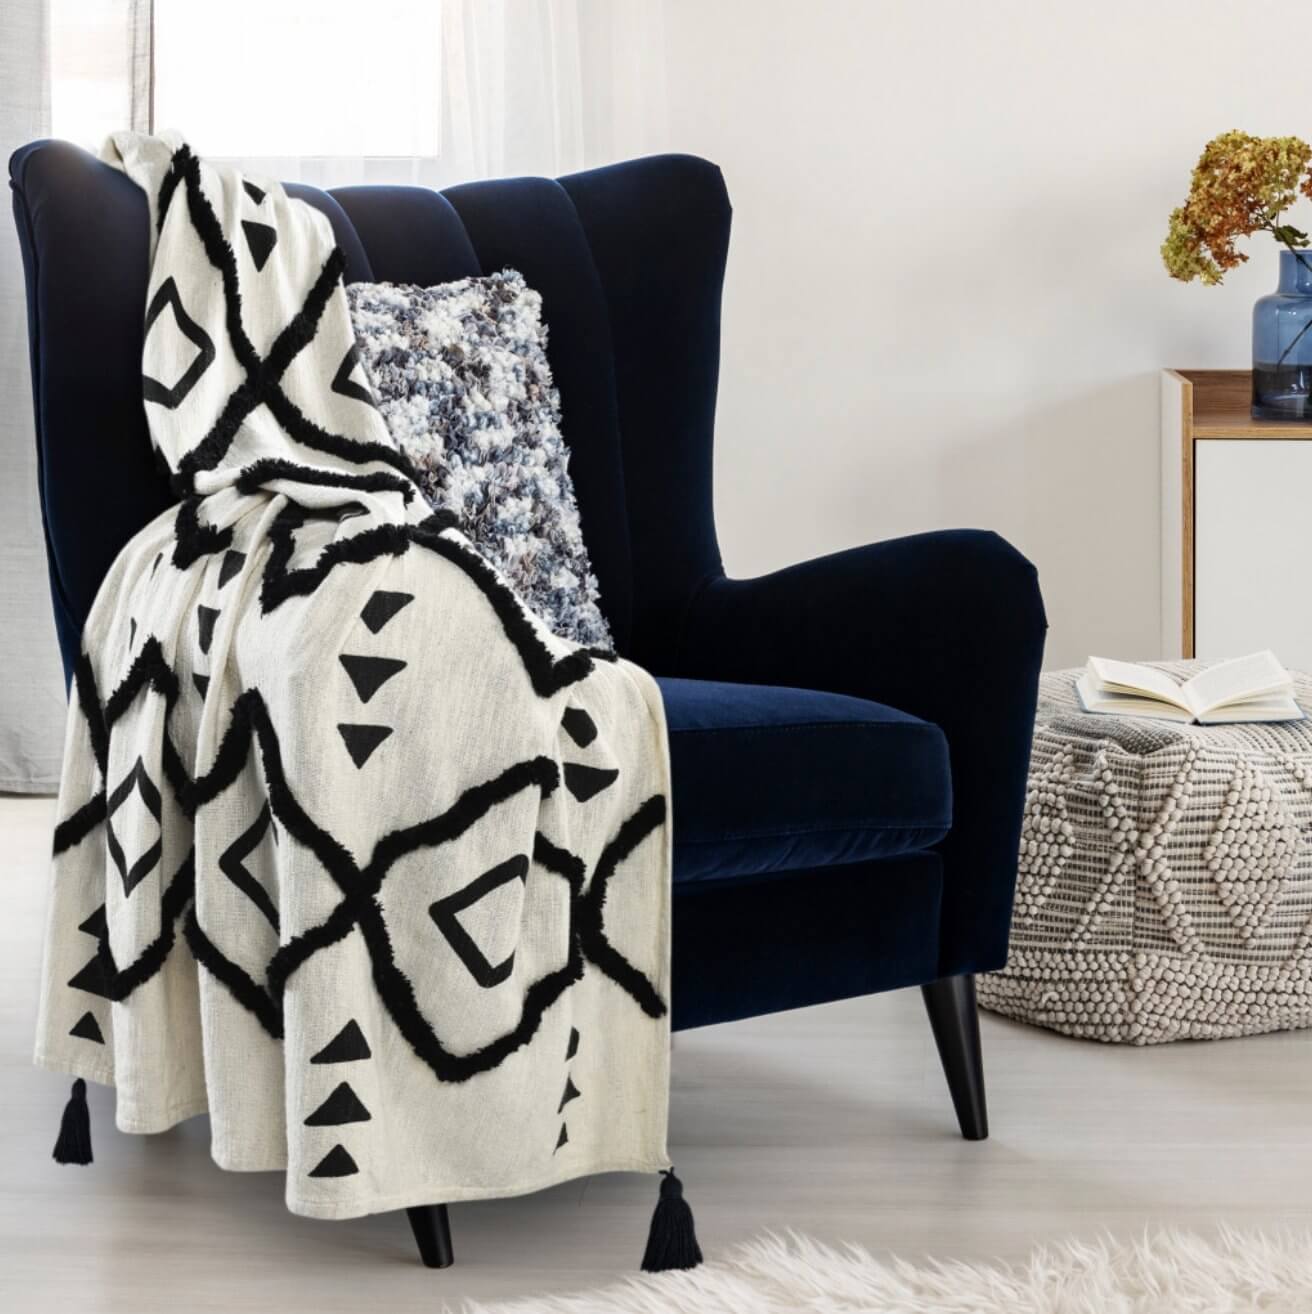 Black And White Woven Cotton Geometric Throw Blanket - Revel Sofa 